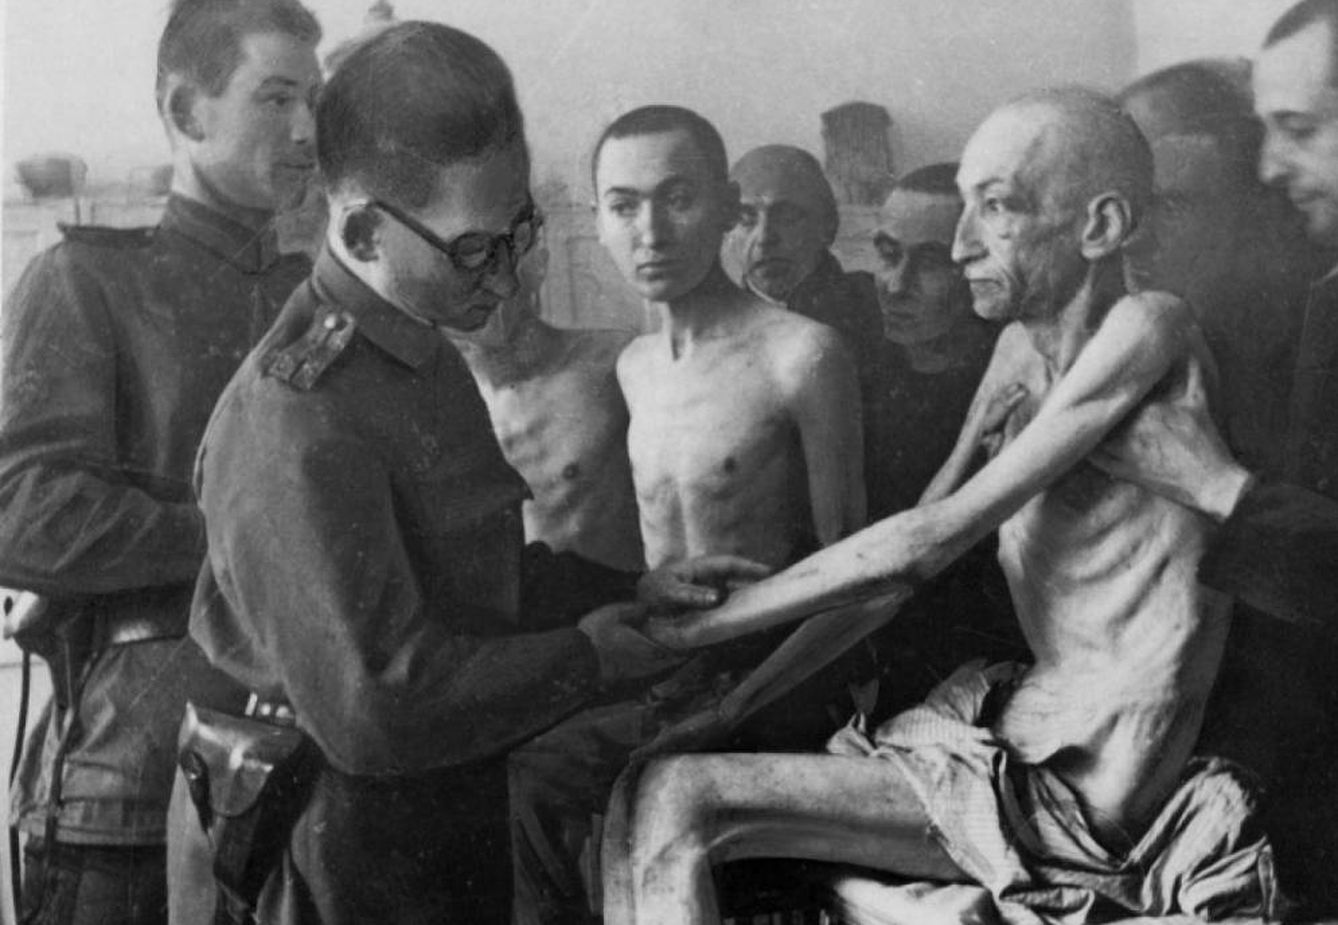 Un militar sanitario de la ‘Armada Roja’ soviética examina a uno de los supervivientes de Auschwitz tras su liberación el 27 de enero de 1945